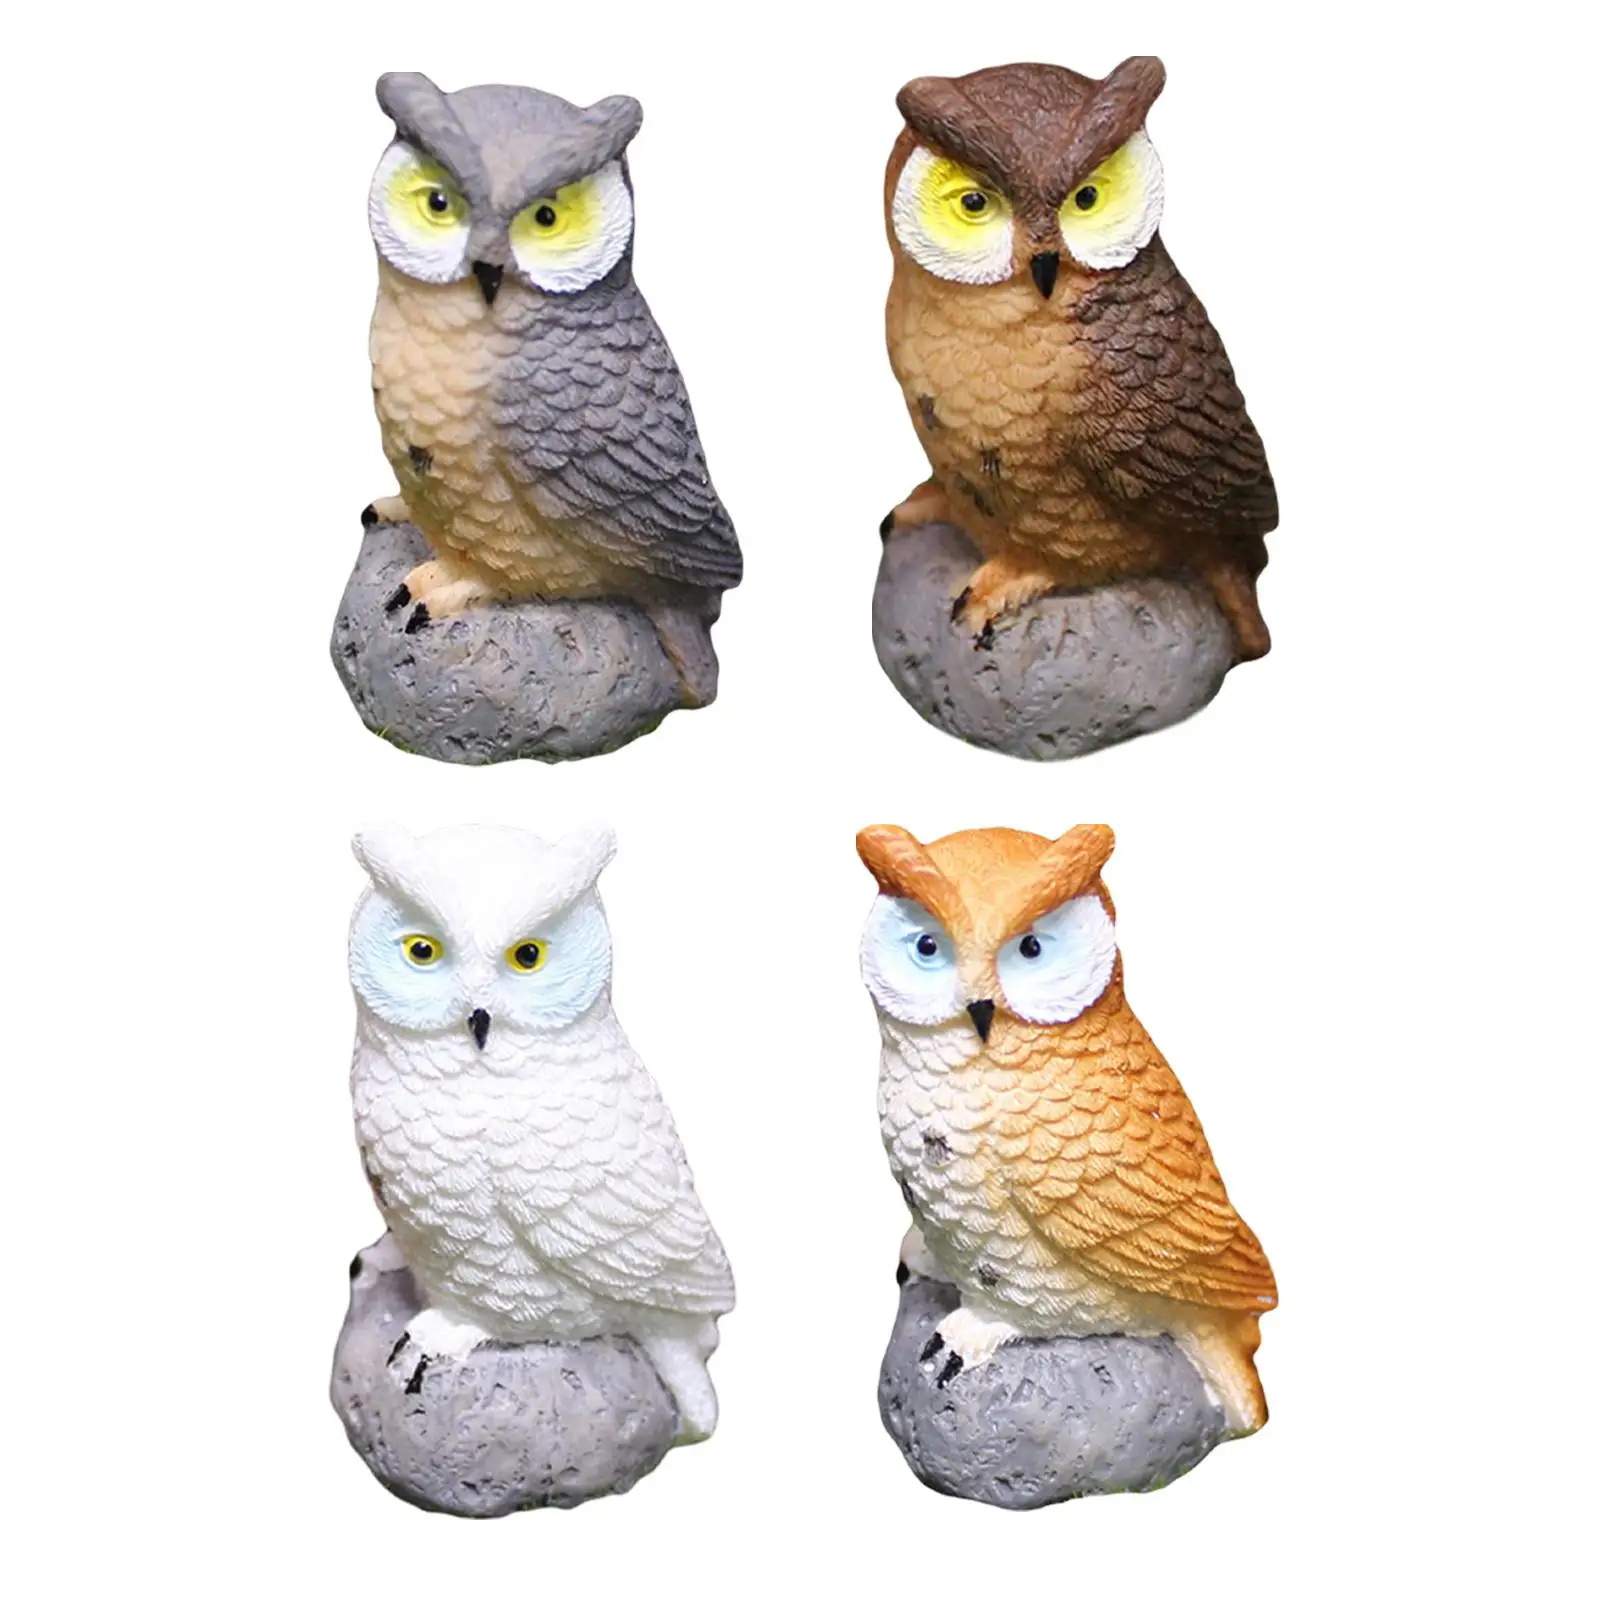 4x Смоляные миниатюрные фигурки птиц и миниатюрных сов для декора бонсай5